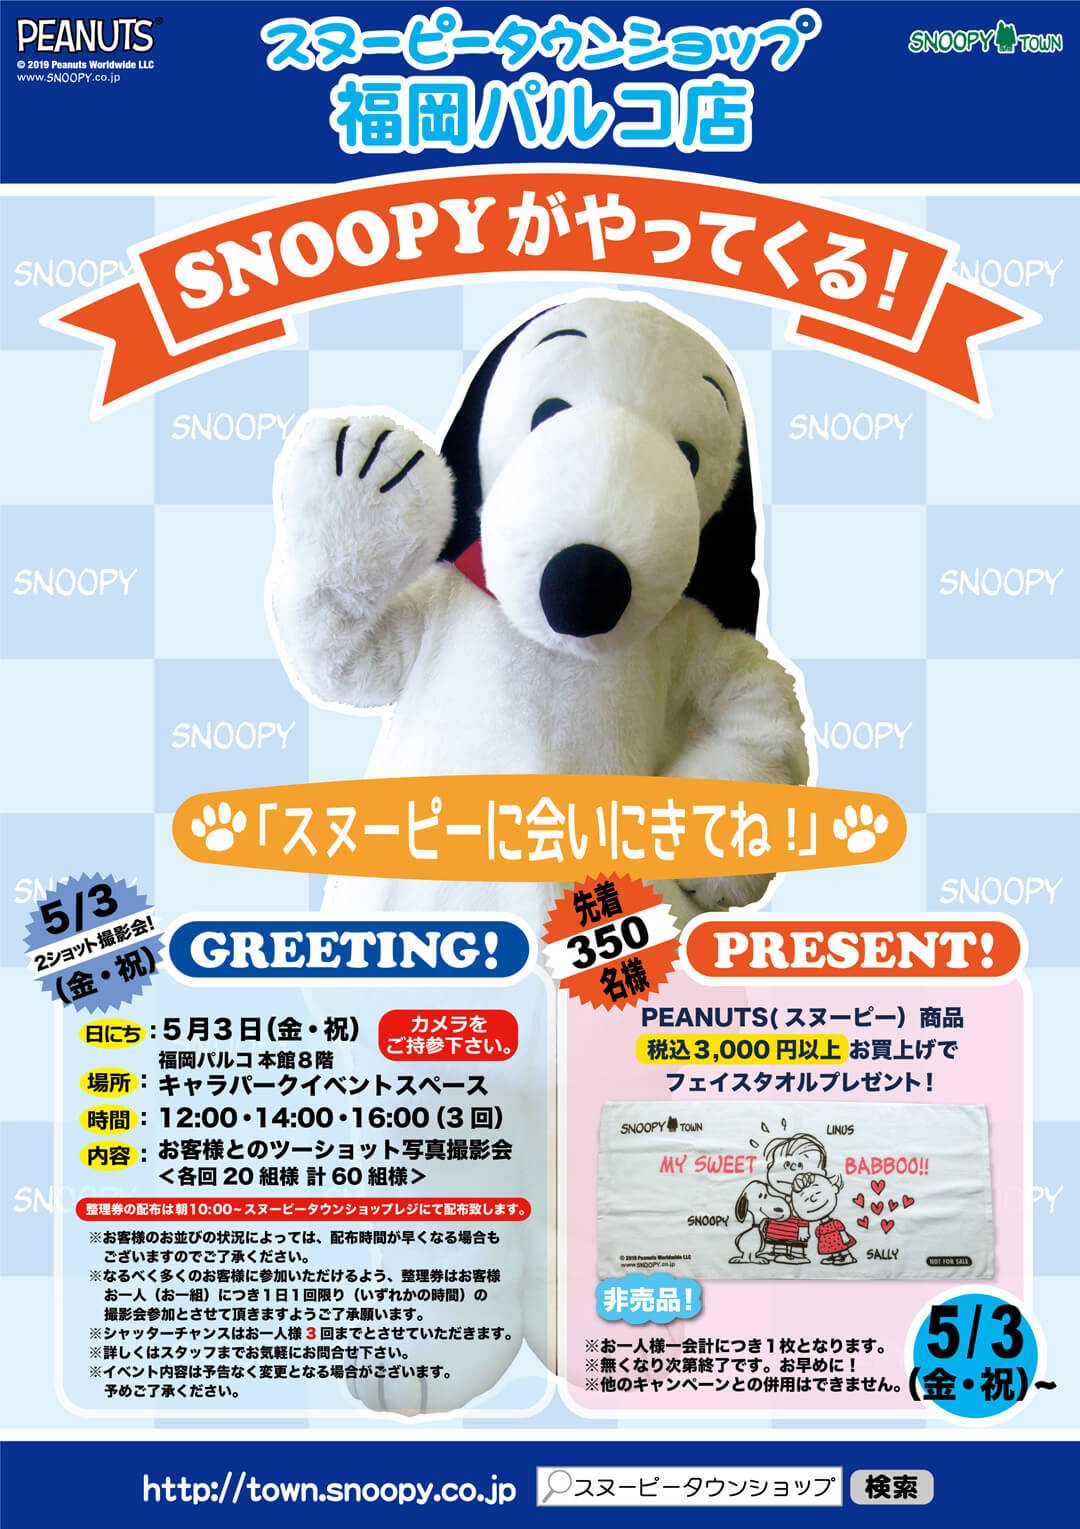 19年5月3日 金 祝 開催 スヌーピータウンショップ 福岡パルコ店にスヌーピーがやってくる スヌーピータウンショップ